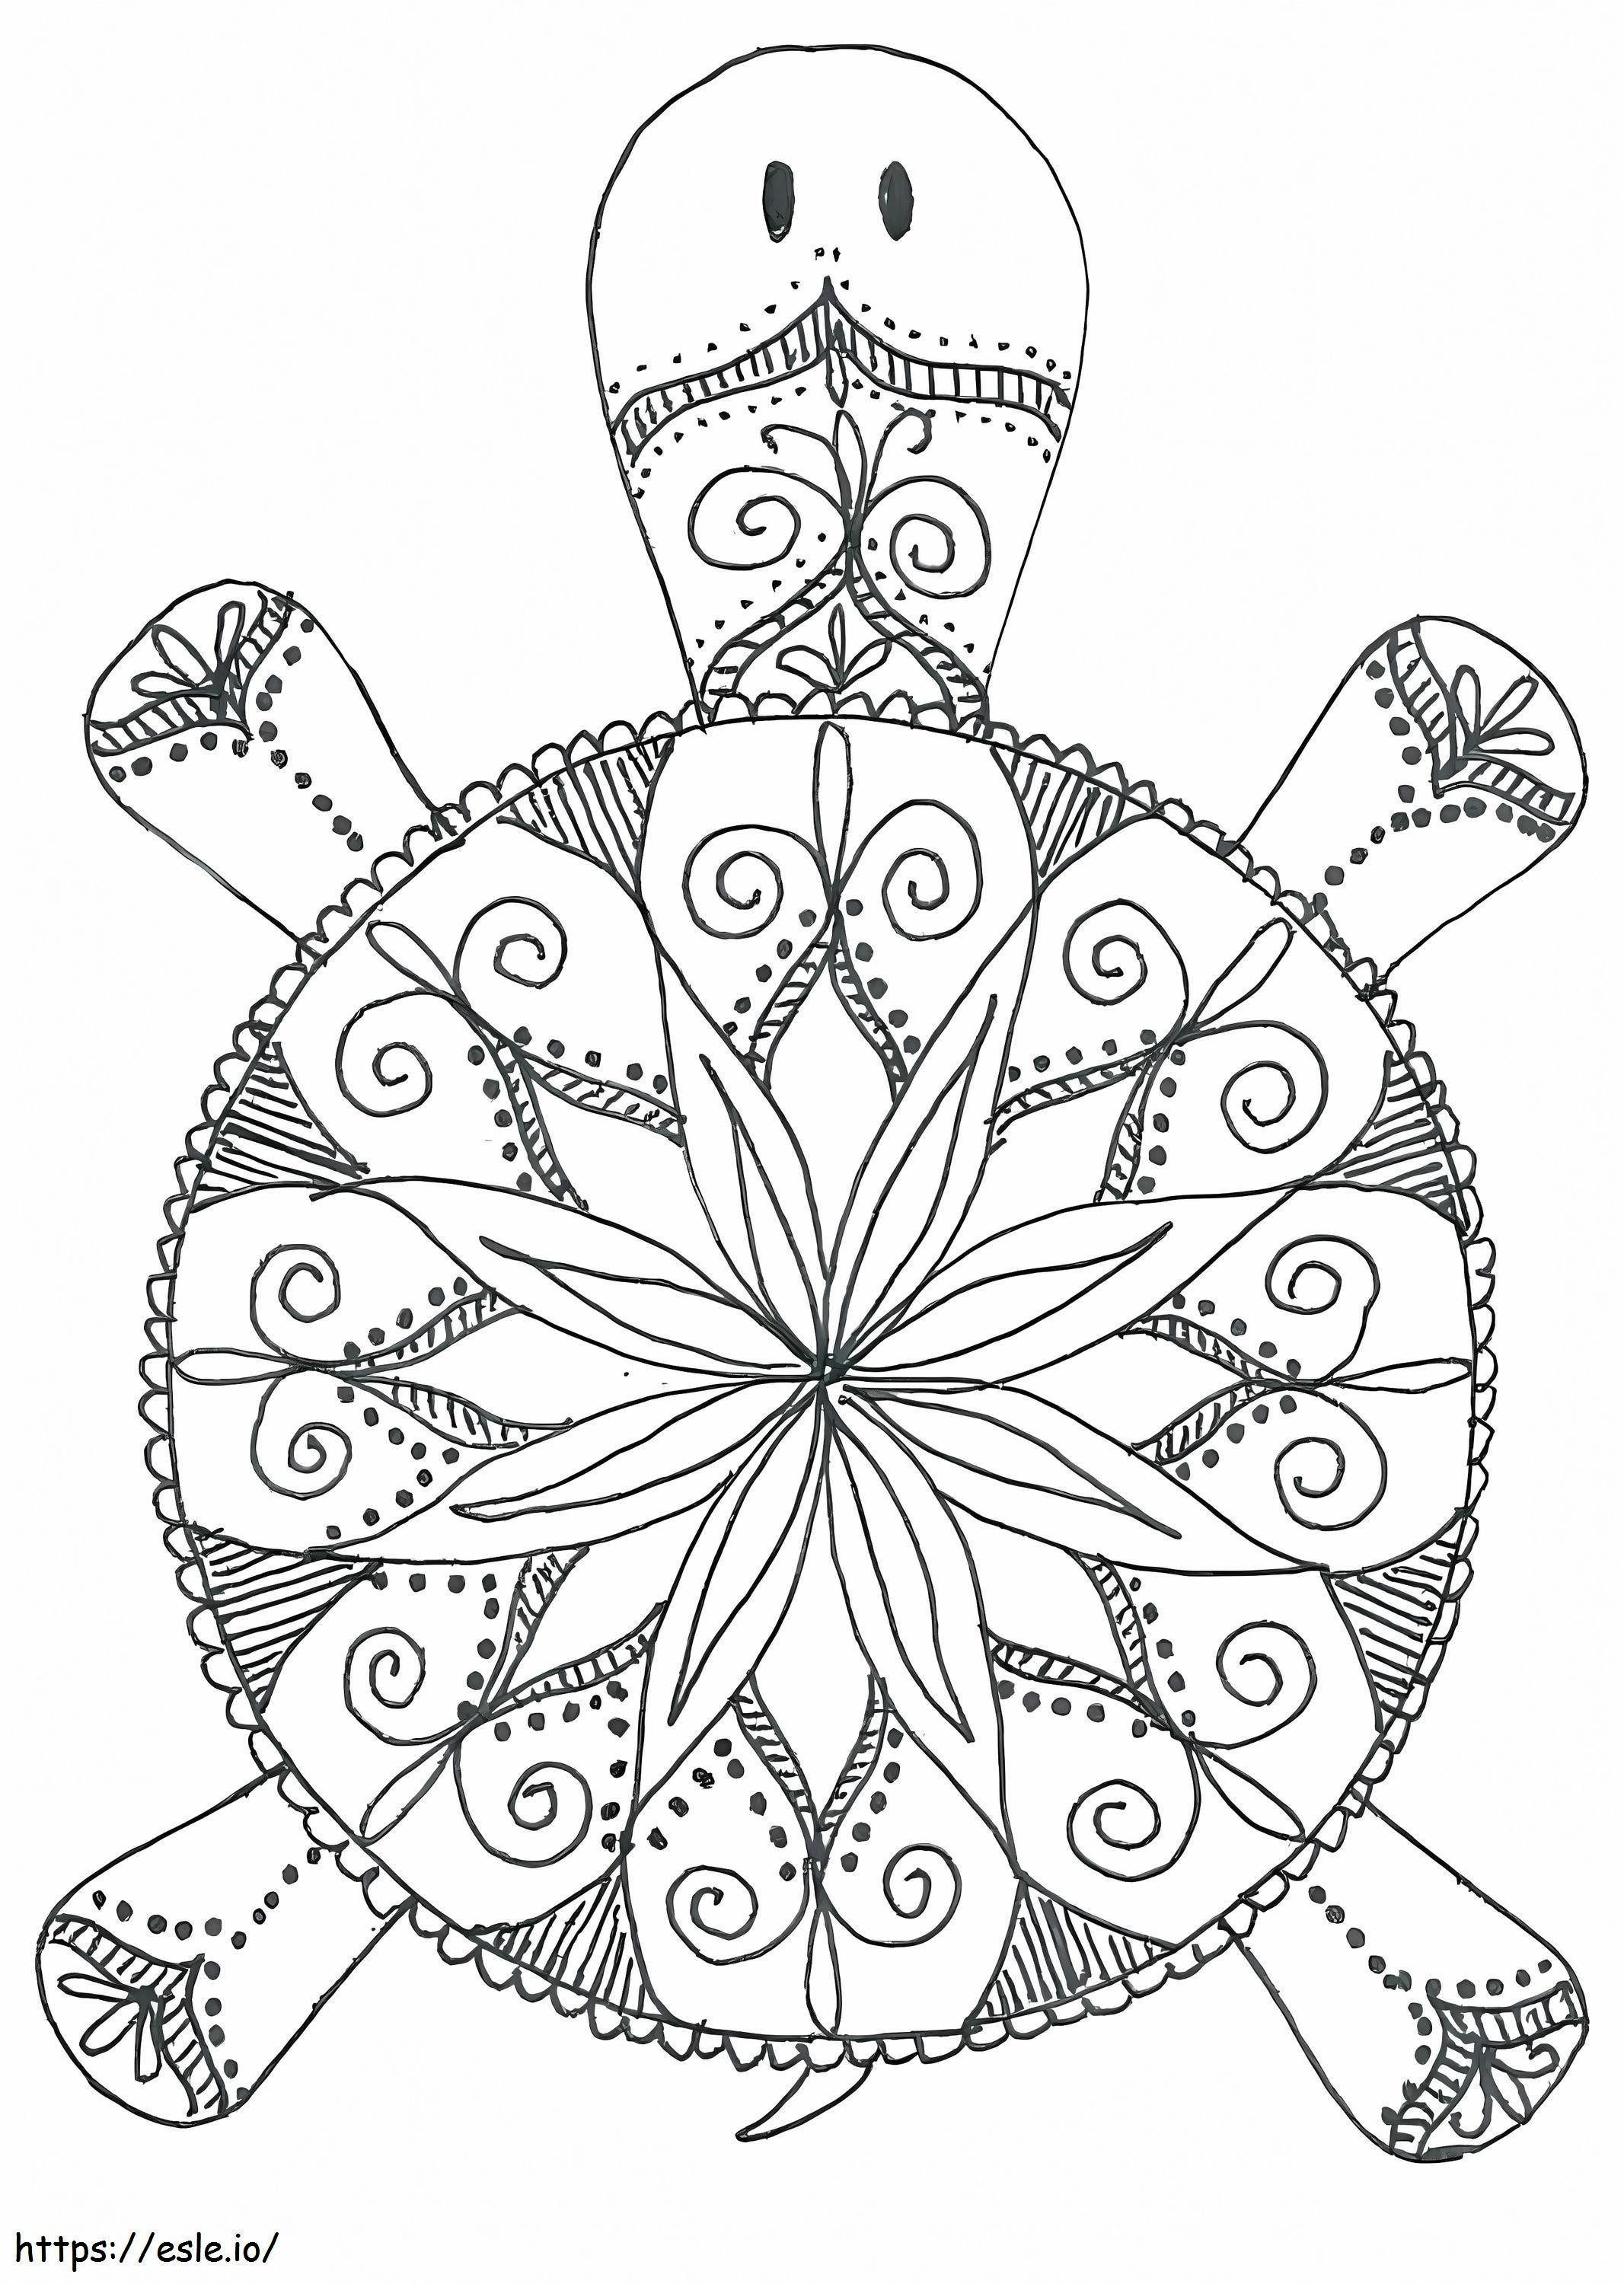 Mandala ze zwierzętami żółwi kolorowanka